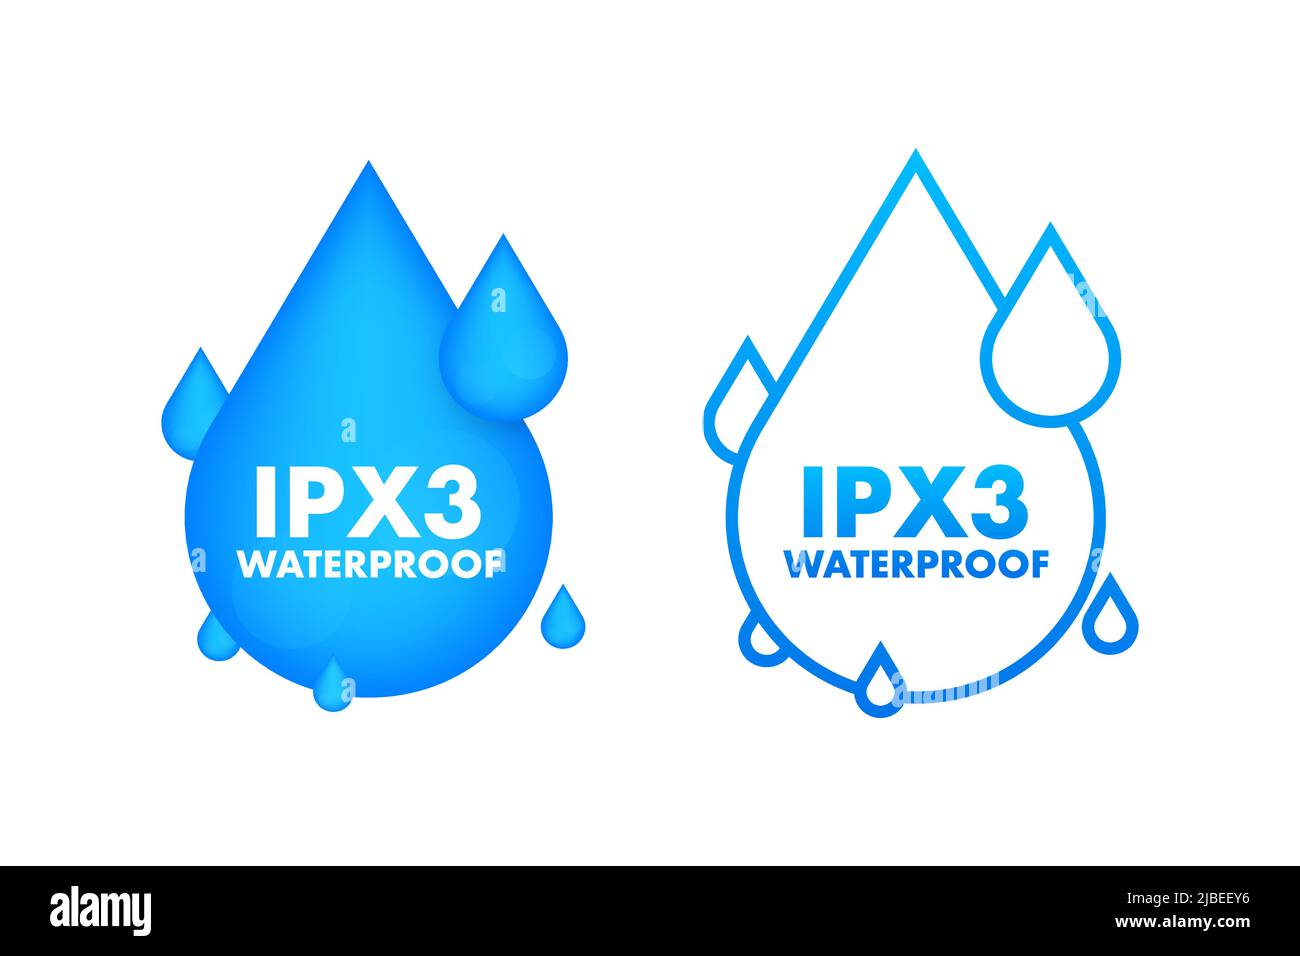 IPX3 panneau d'information sur le niveau de résistance à l'eau étanche Illustration de Vecteur